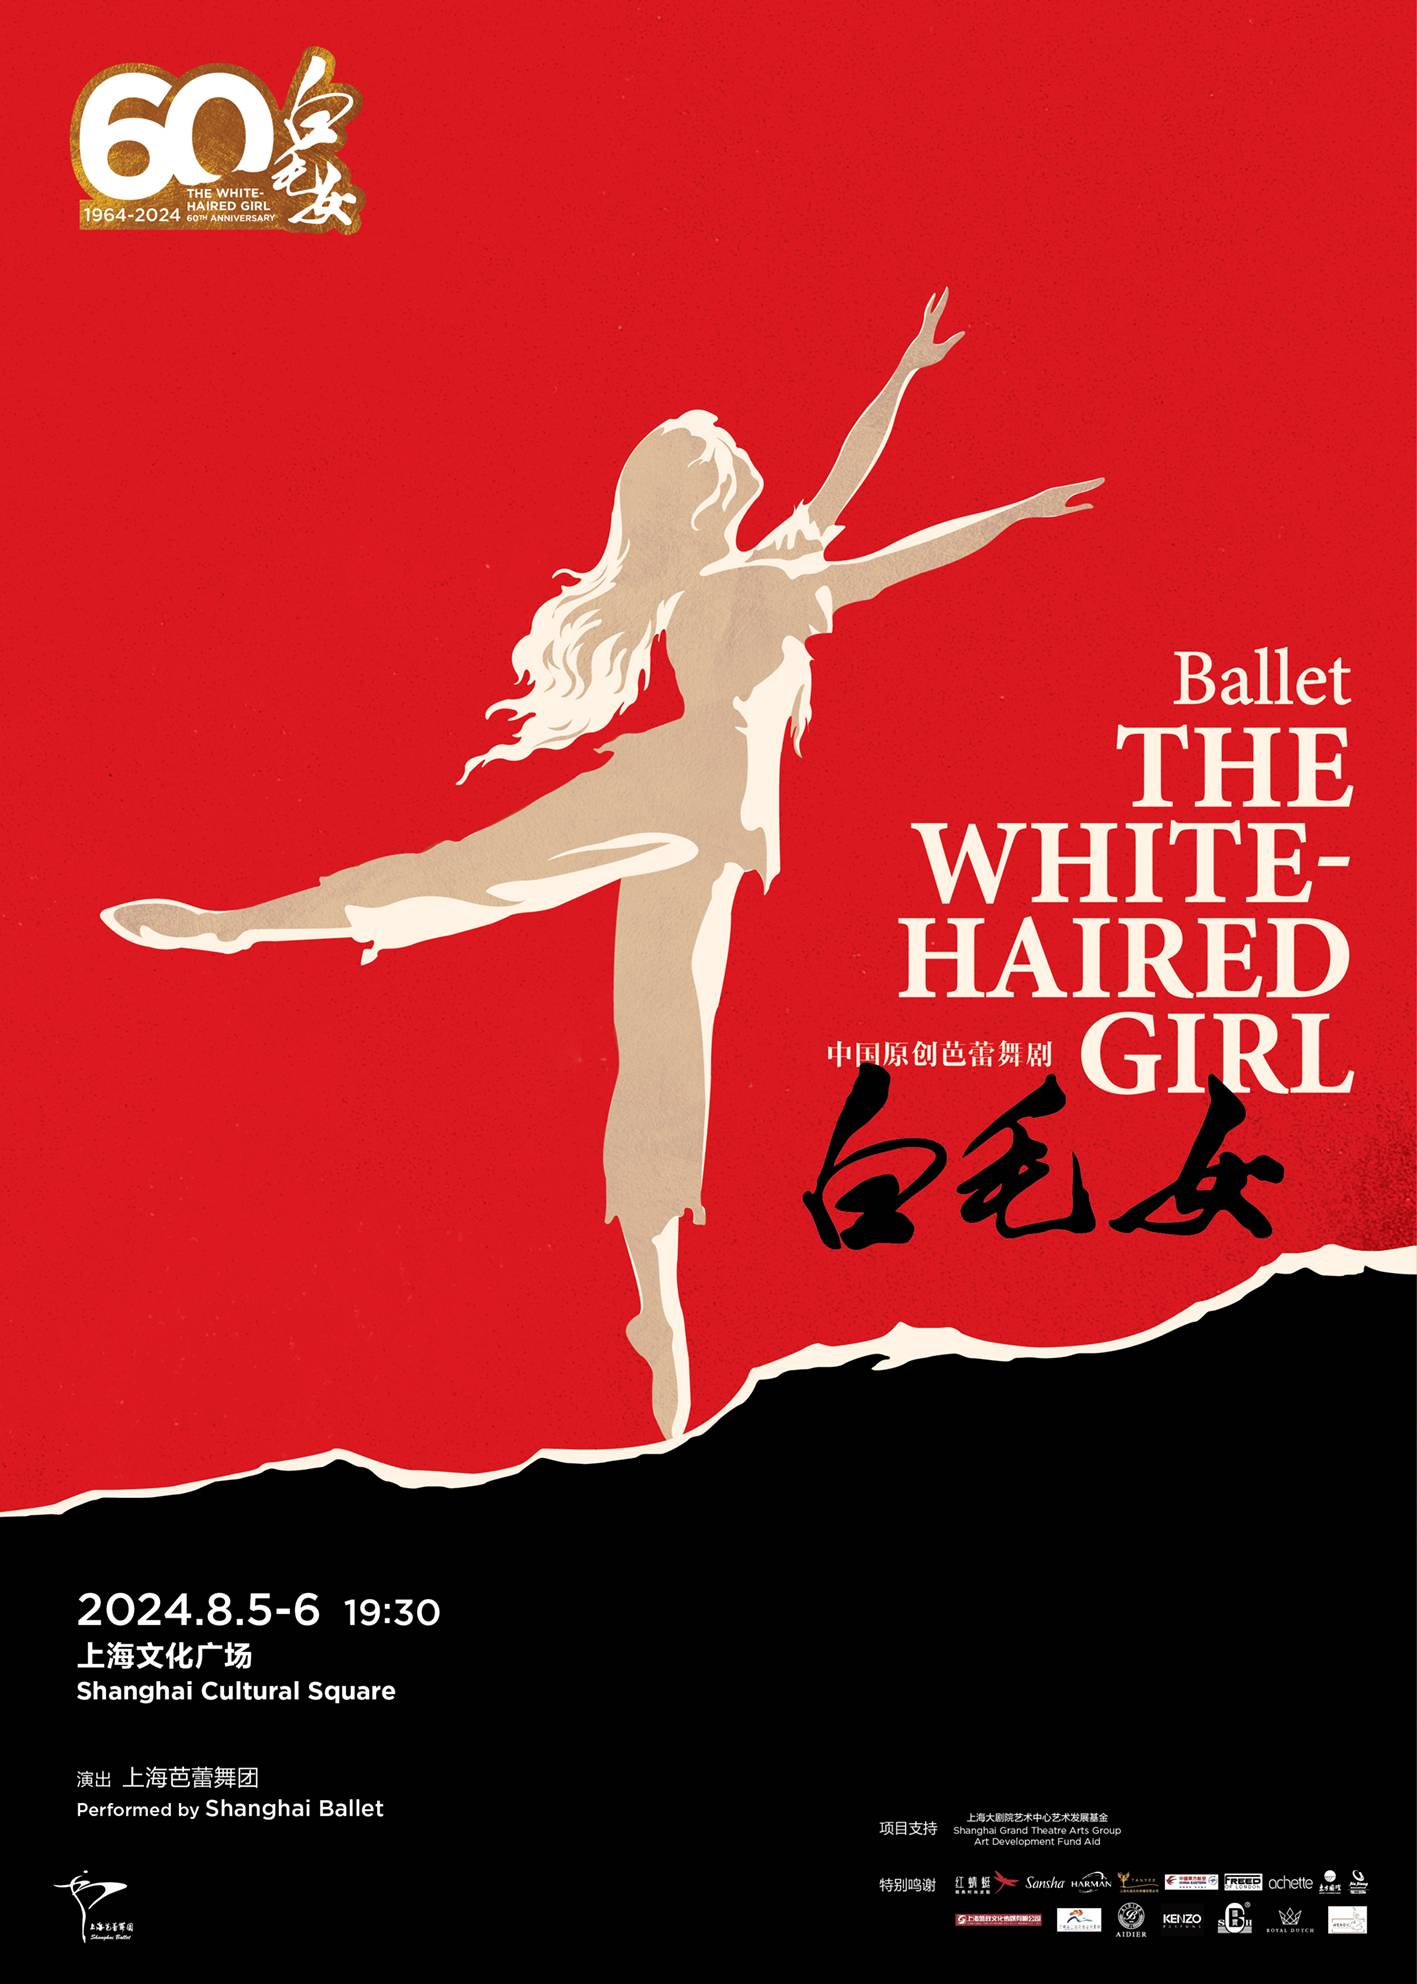 Shanghai Ballet "The White-haired Girl"